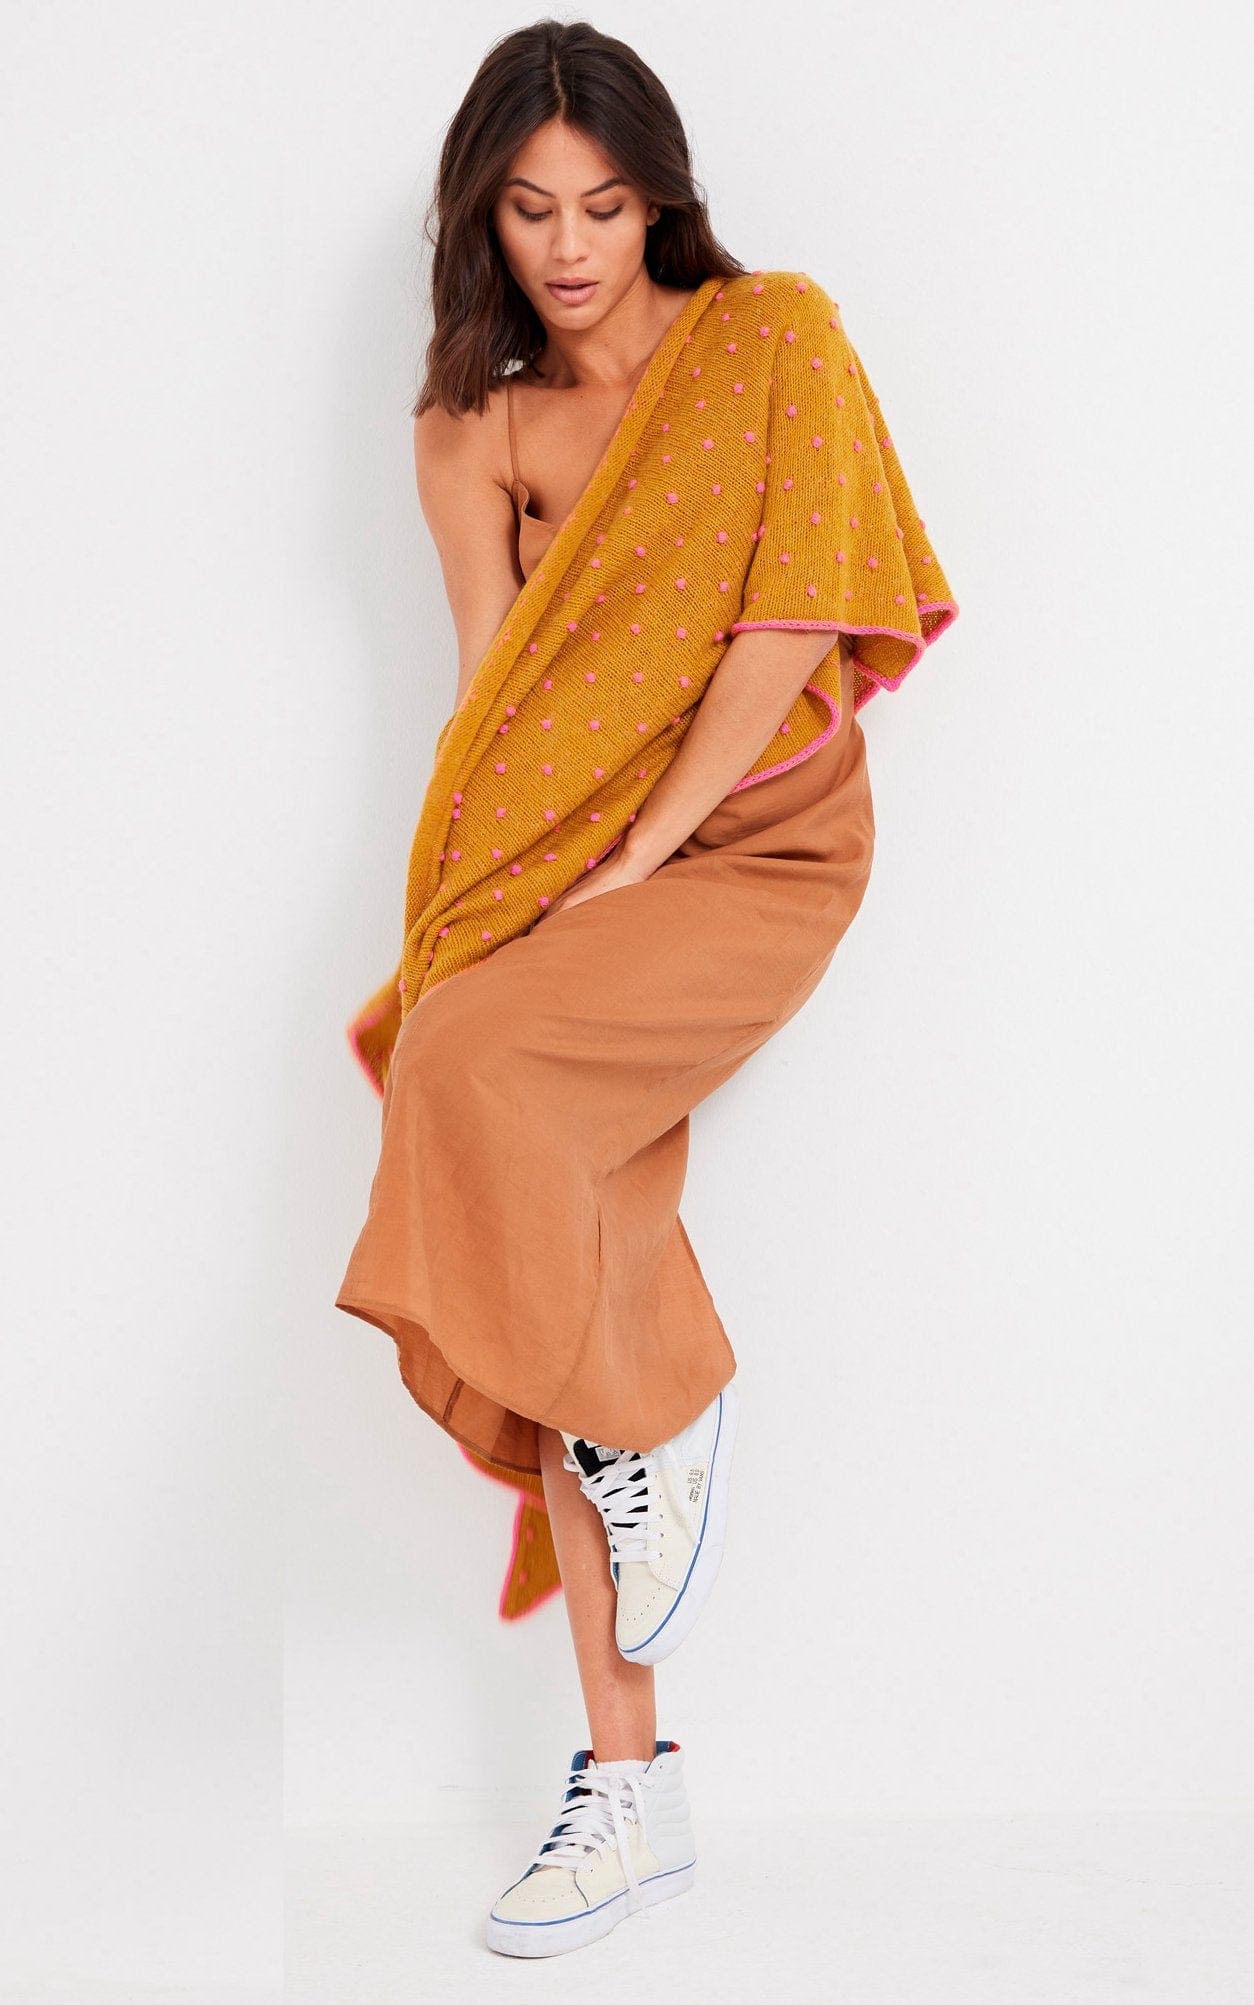 Schal mit Pünktchen - Ecopuno - Strickset von LANA GROSSA jetzt online kaufen bei OONIQUE